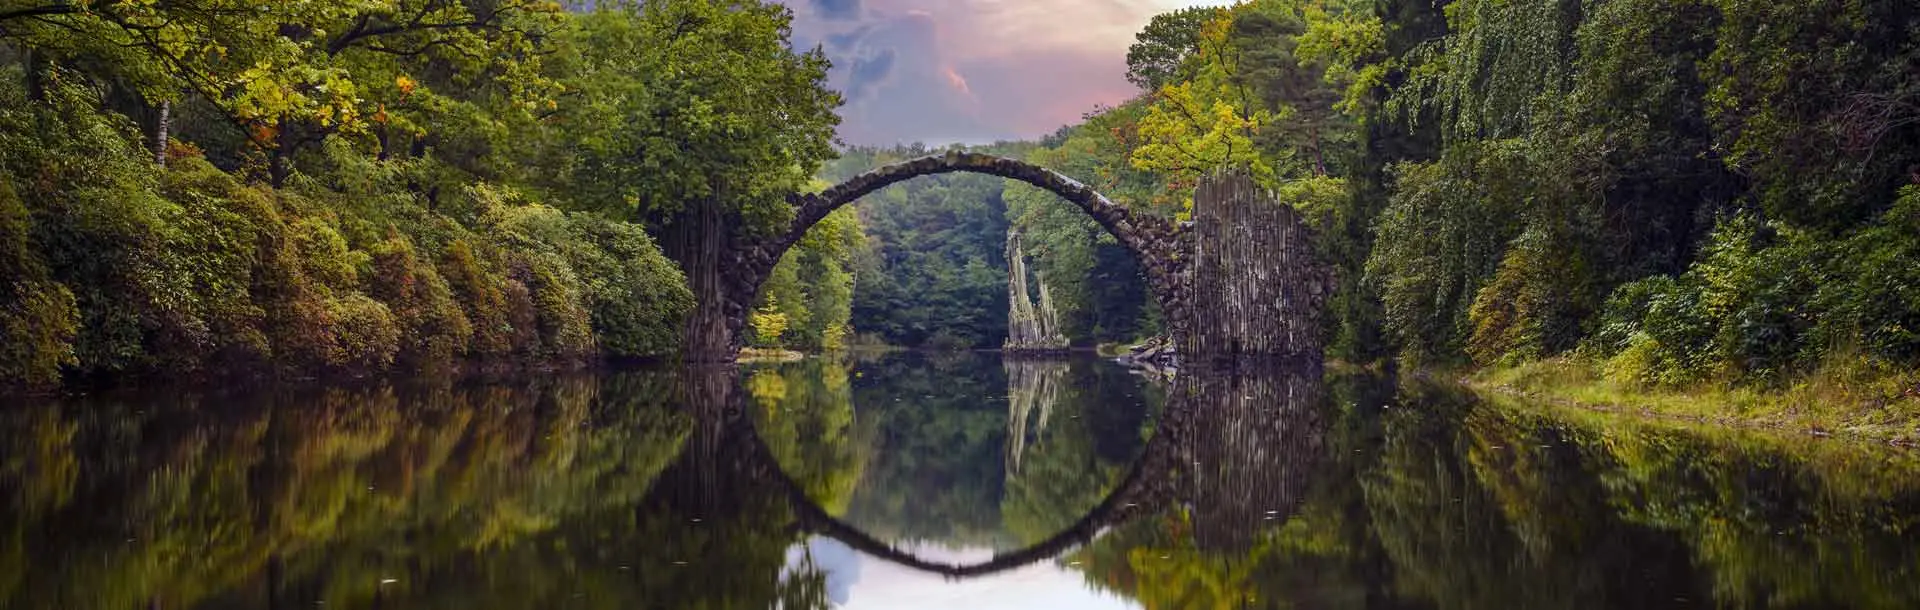 Bild: Ein Fluss mit einer Brücke und ringsherum ist Wald